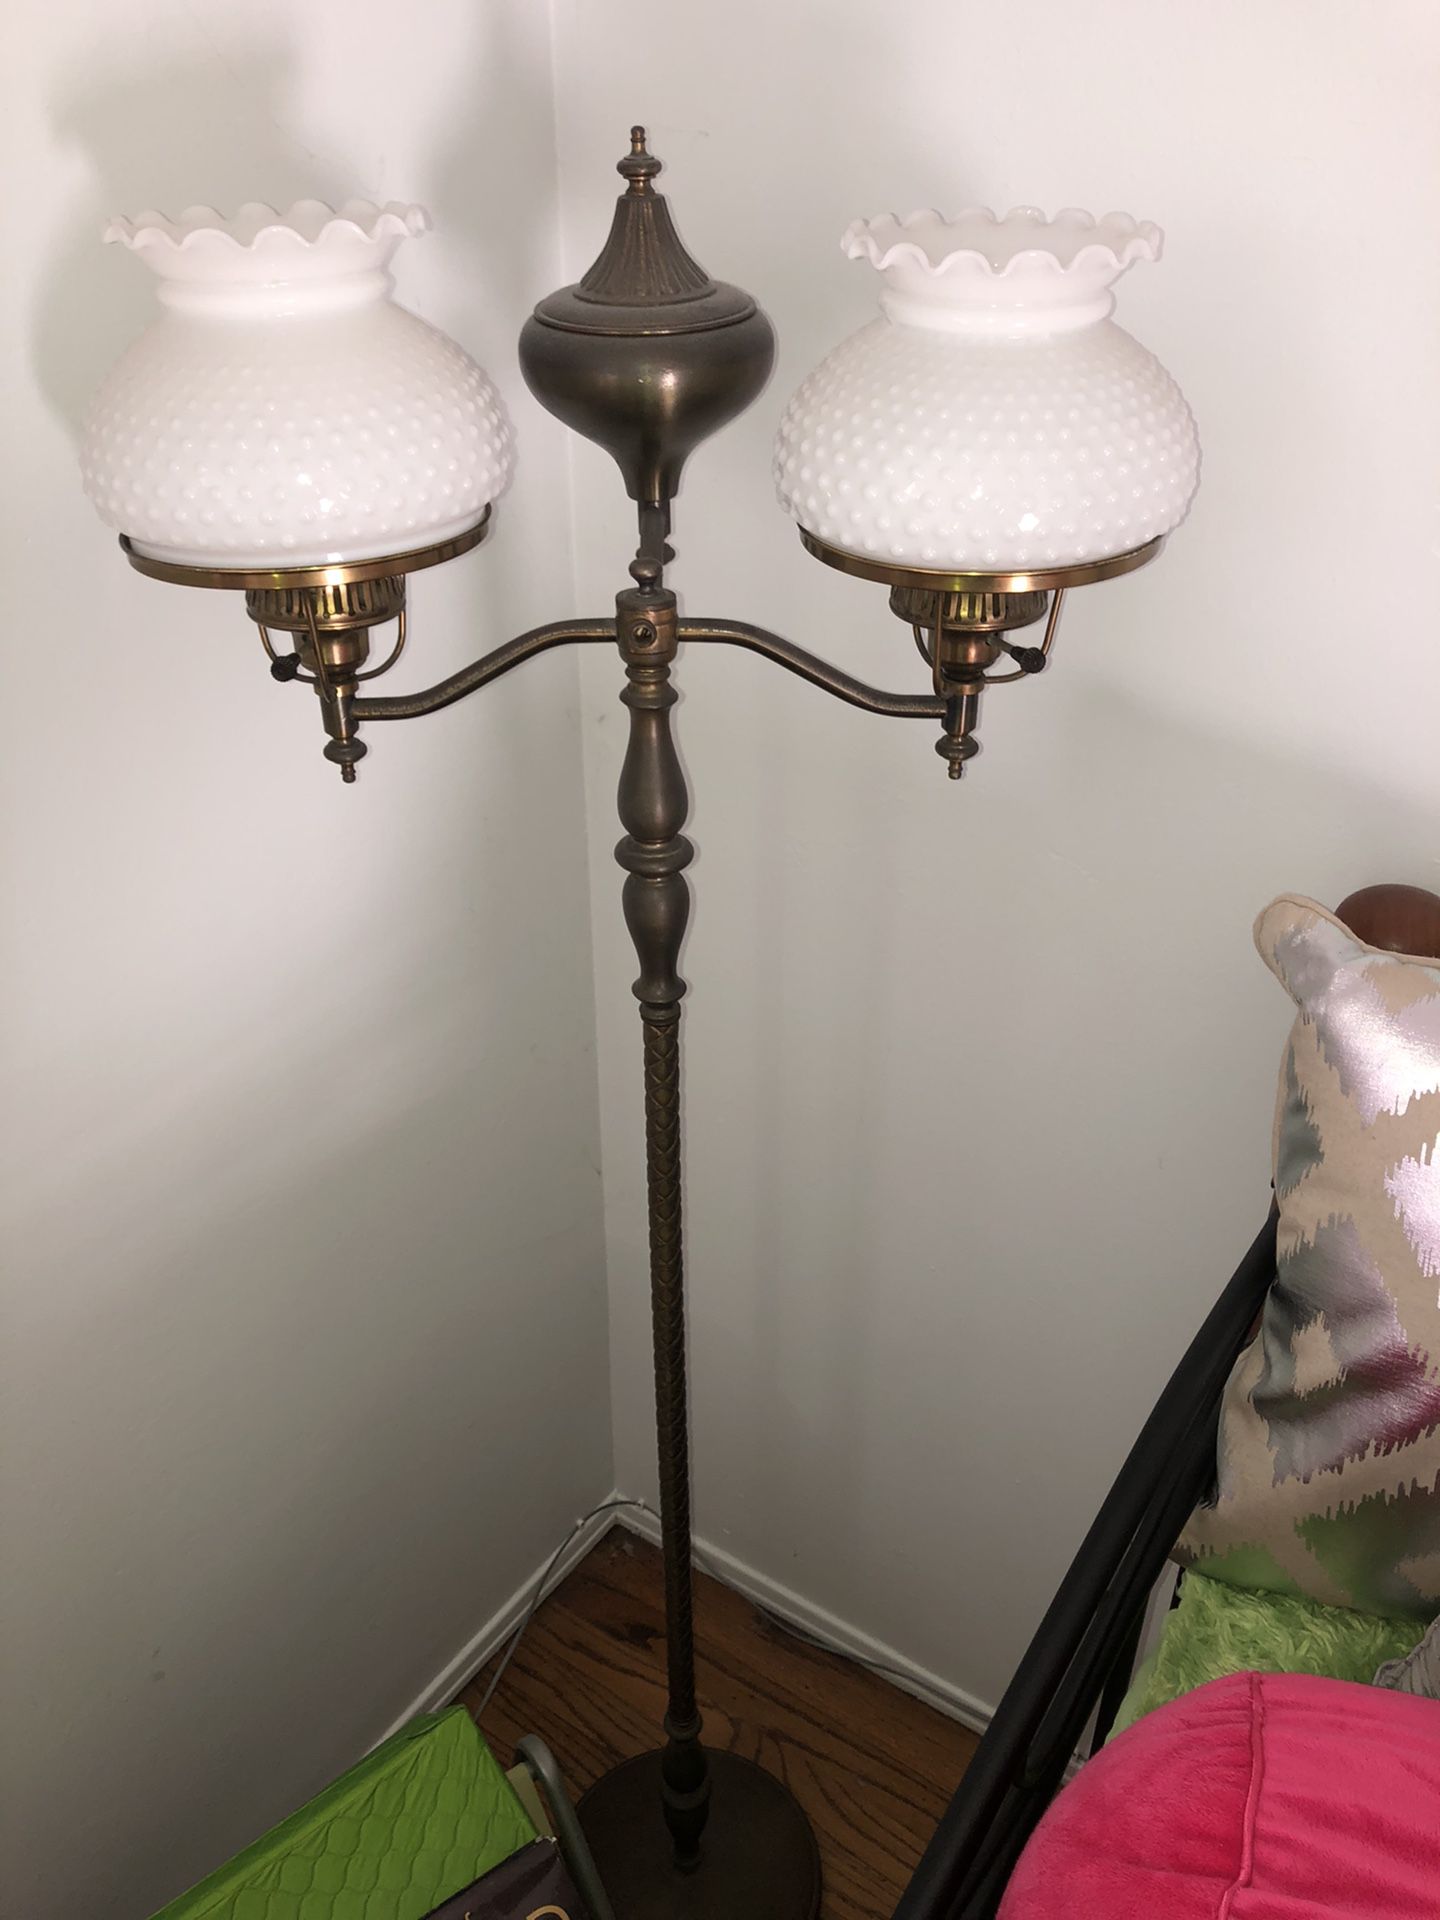 Antique double lamp